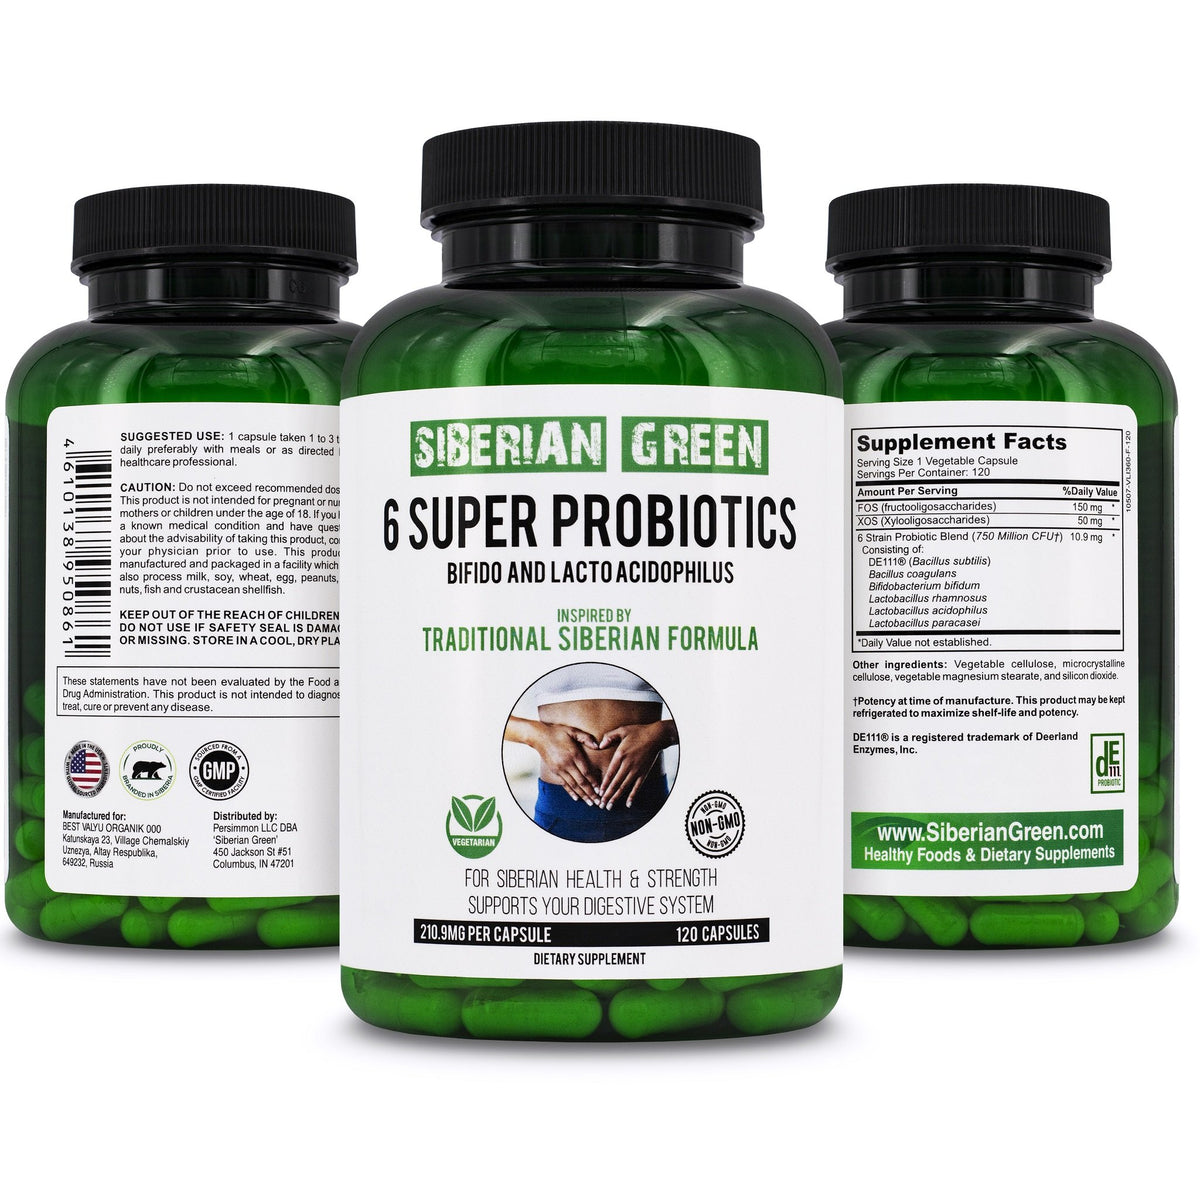 Siberian Green 6 Super Probiotics Bifido &amp; Lacto Acidophilus 120 Caps - Traditional Siberian Formula